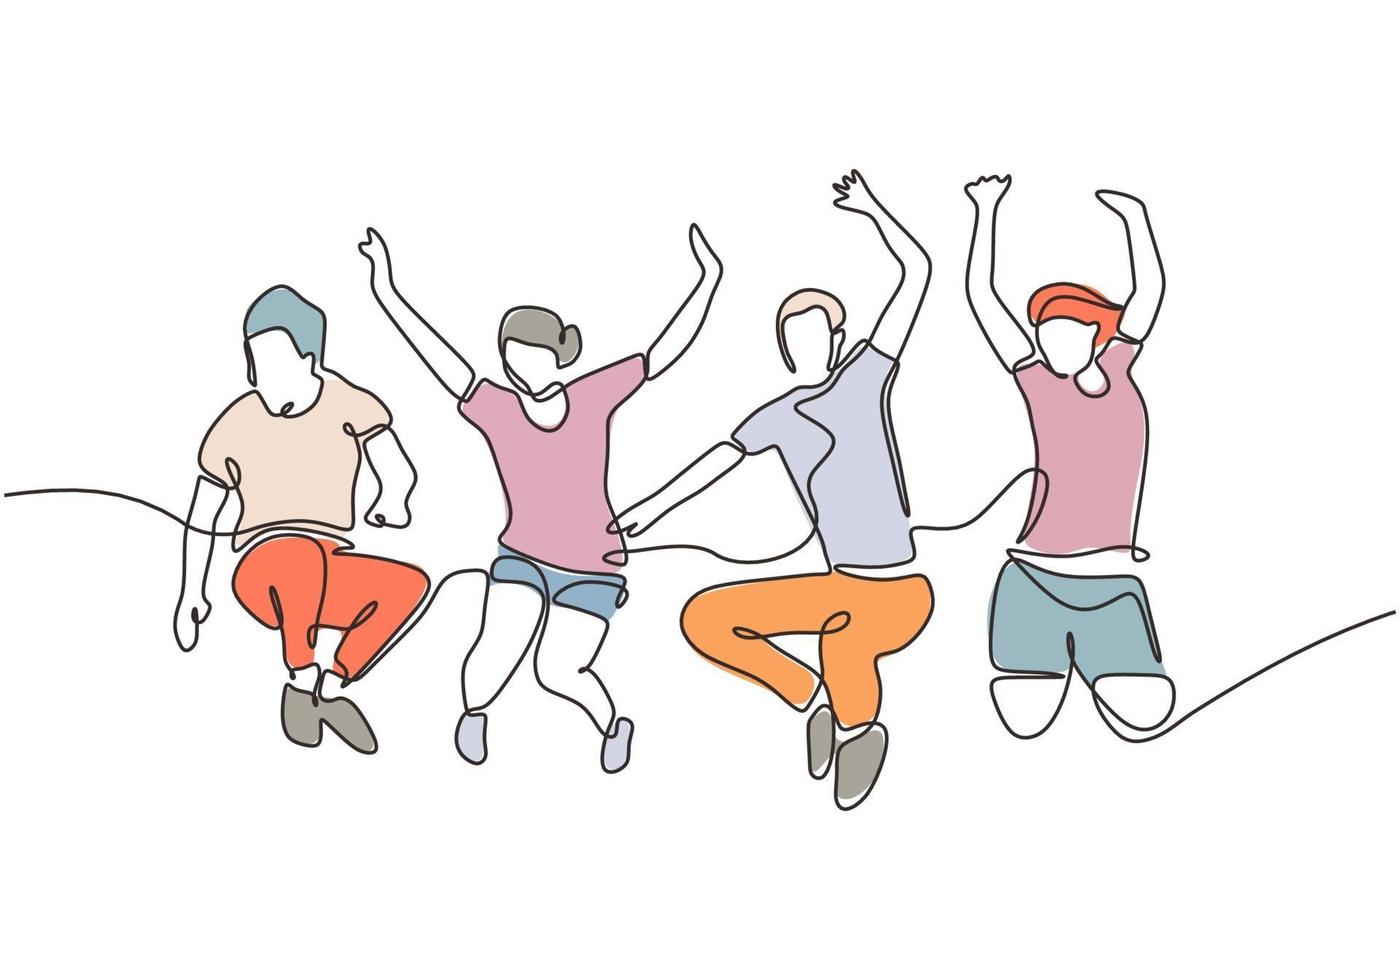 Gruppe von Menschen, die springen, sieht glücklich aus und genießt ihr Leben vektor